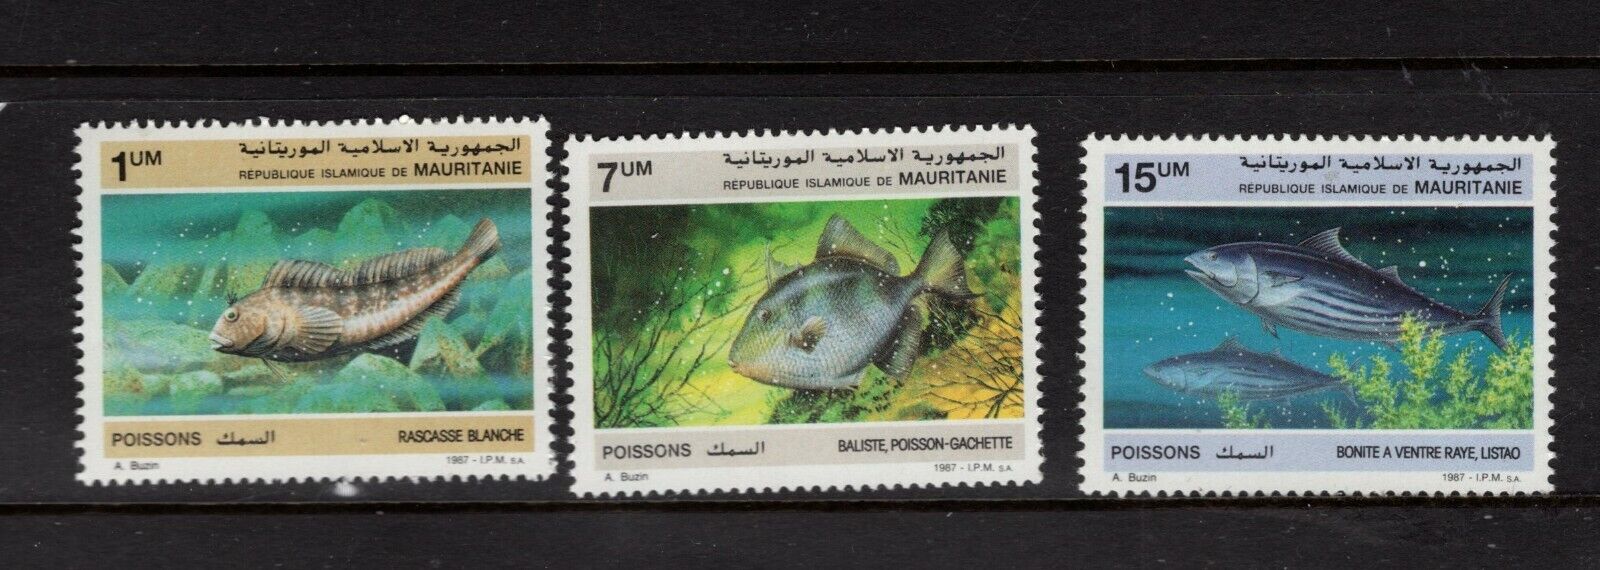 Mauritania #1031-33 (1988 Fish Set) Cv $4.50